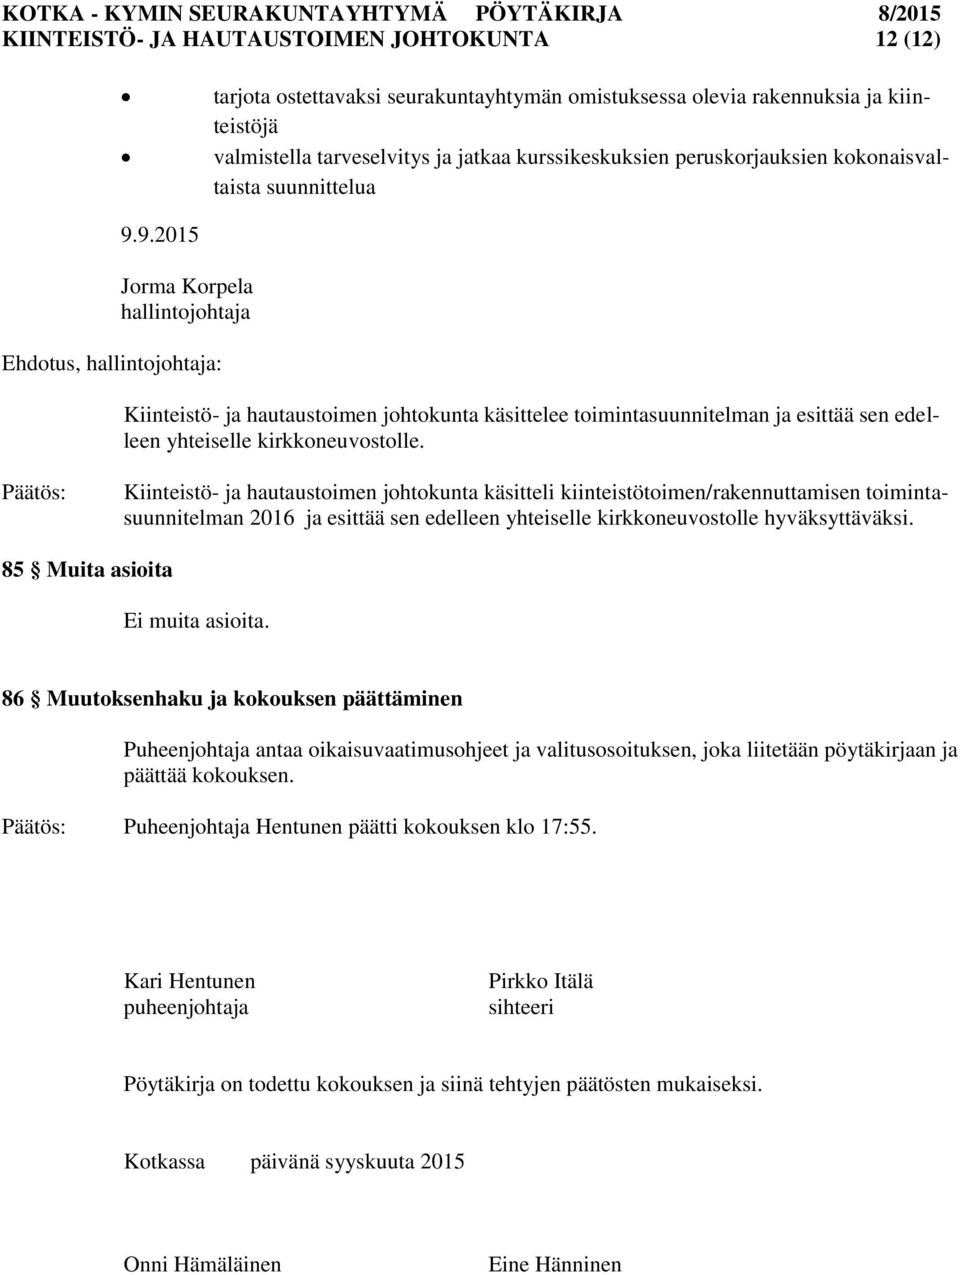 9.2015 Jorma Korpela hallintojohtaja Ehdotus, hallintojohtaja: Kiinteistö- ja hautaustoimen johtokunta käsittelee toimintasuunnitelman ja esittää sen edelleen yhteiselle kirkkoneuvostolle.